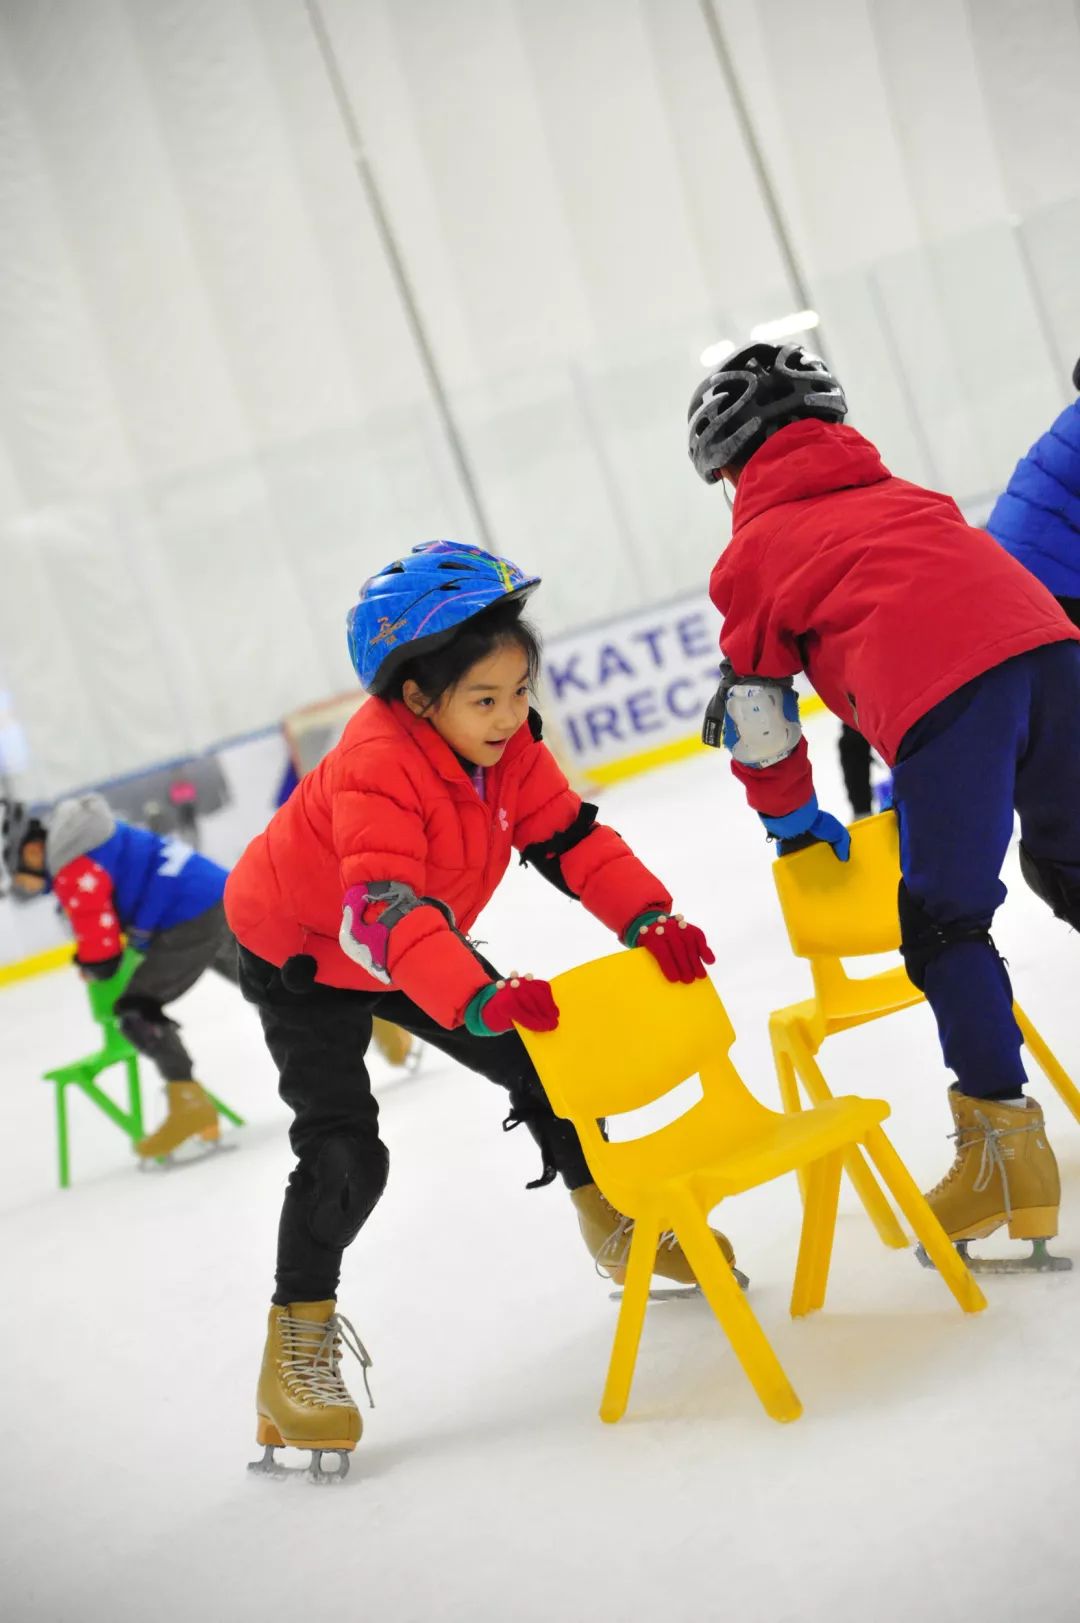 踏冰起舞筑梦冬奥五一小学二年级冰雪运动体验课程掠影